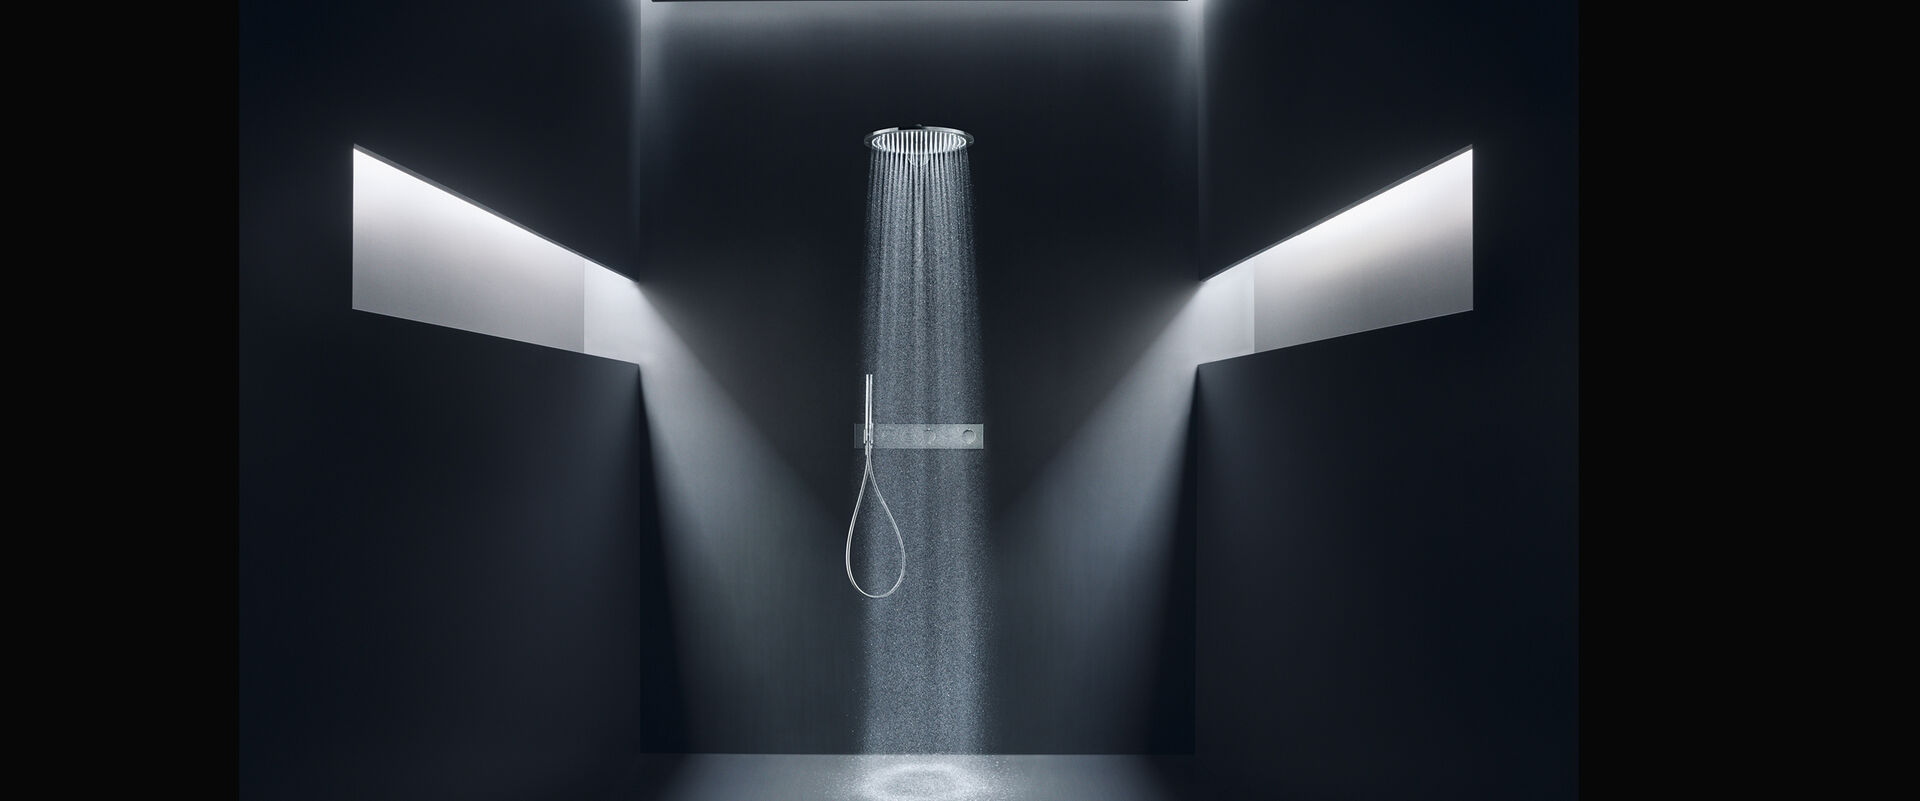 Elegantes Schwarzes Badezimmer, in dem eine Axor Showers Kopfbrause installiert ist. Lichtschächte Links und Rechts sorgen für eine geheimnisvolle Stimmung. Aus der Kopfbrause fließt das Wasser.